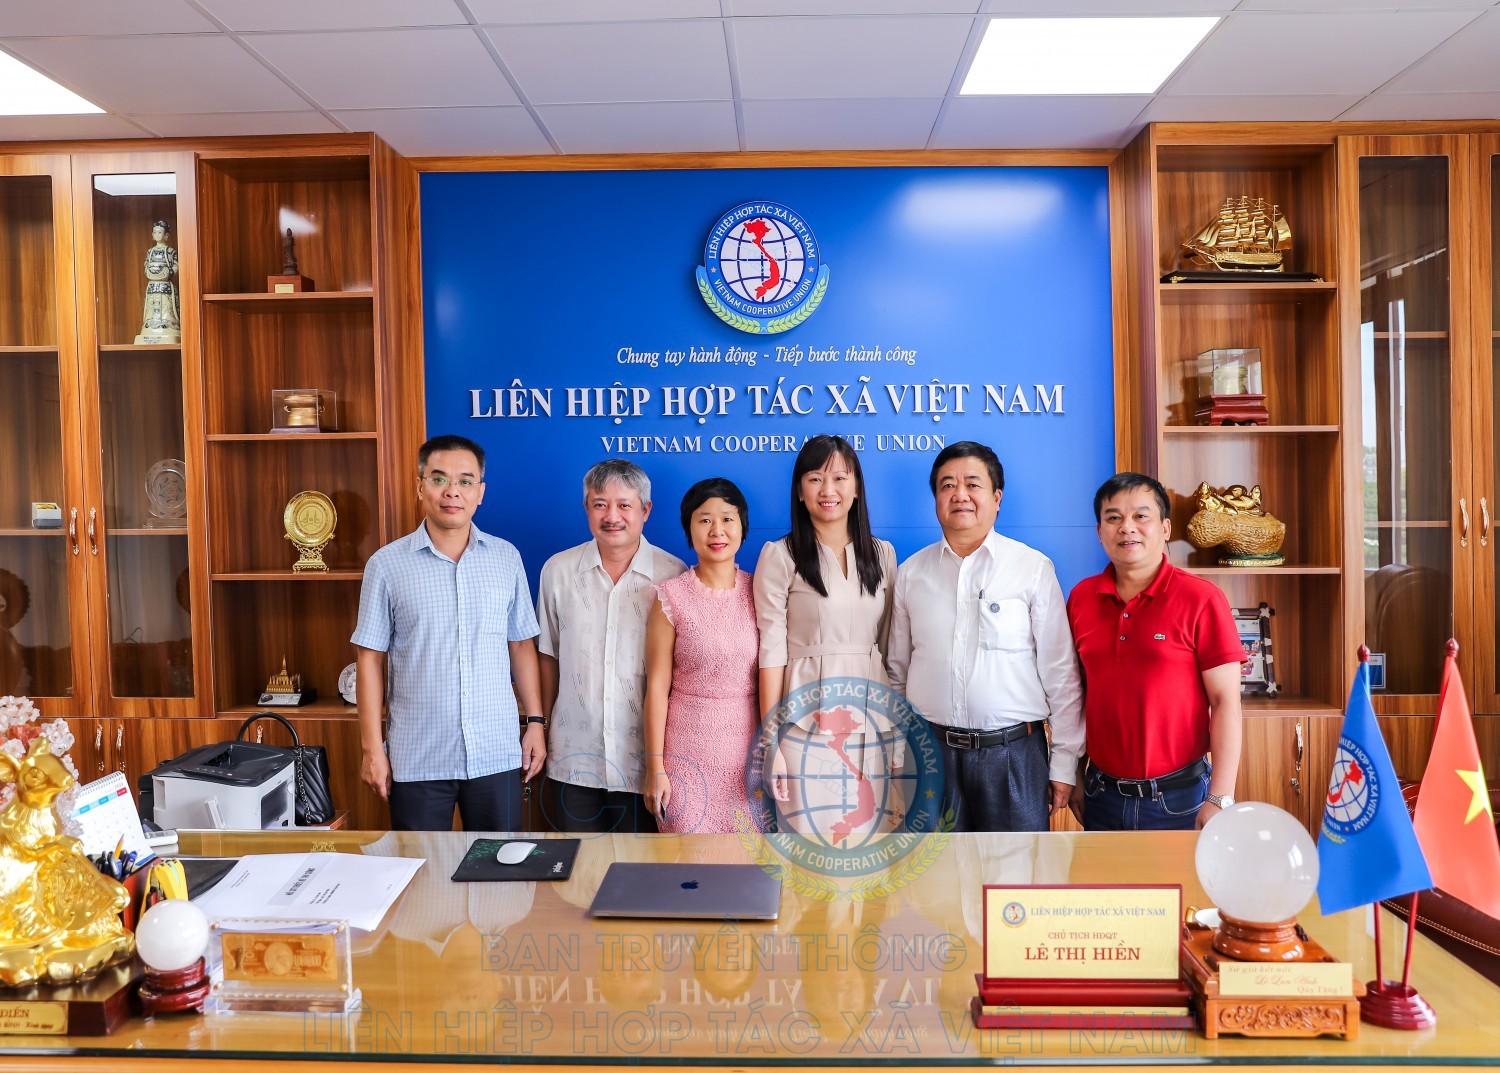 Đoàn cán bộ Liên minh Hợp tác xã Việt Nam chụp ảnh cùng Chủ tịch Liên Hiệp hợp tác xã Việt Nam Lê Thị Hiền